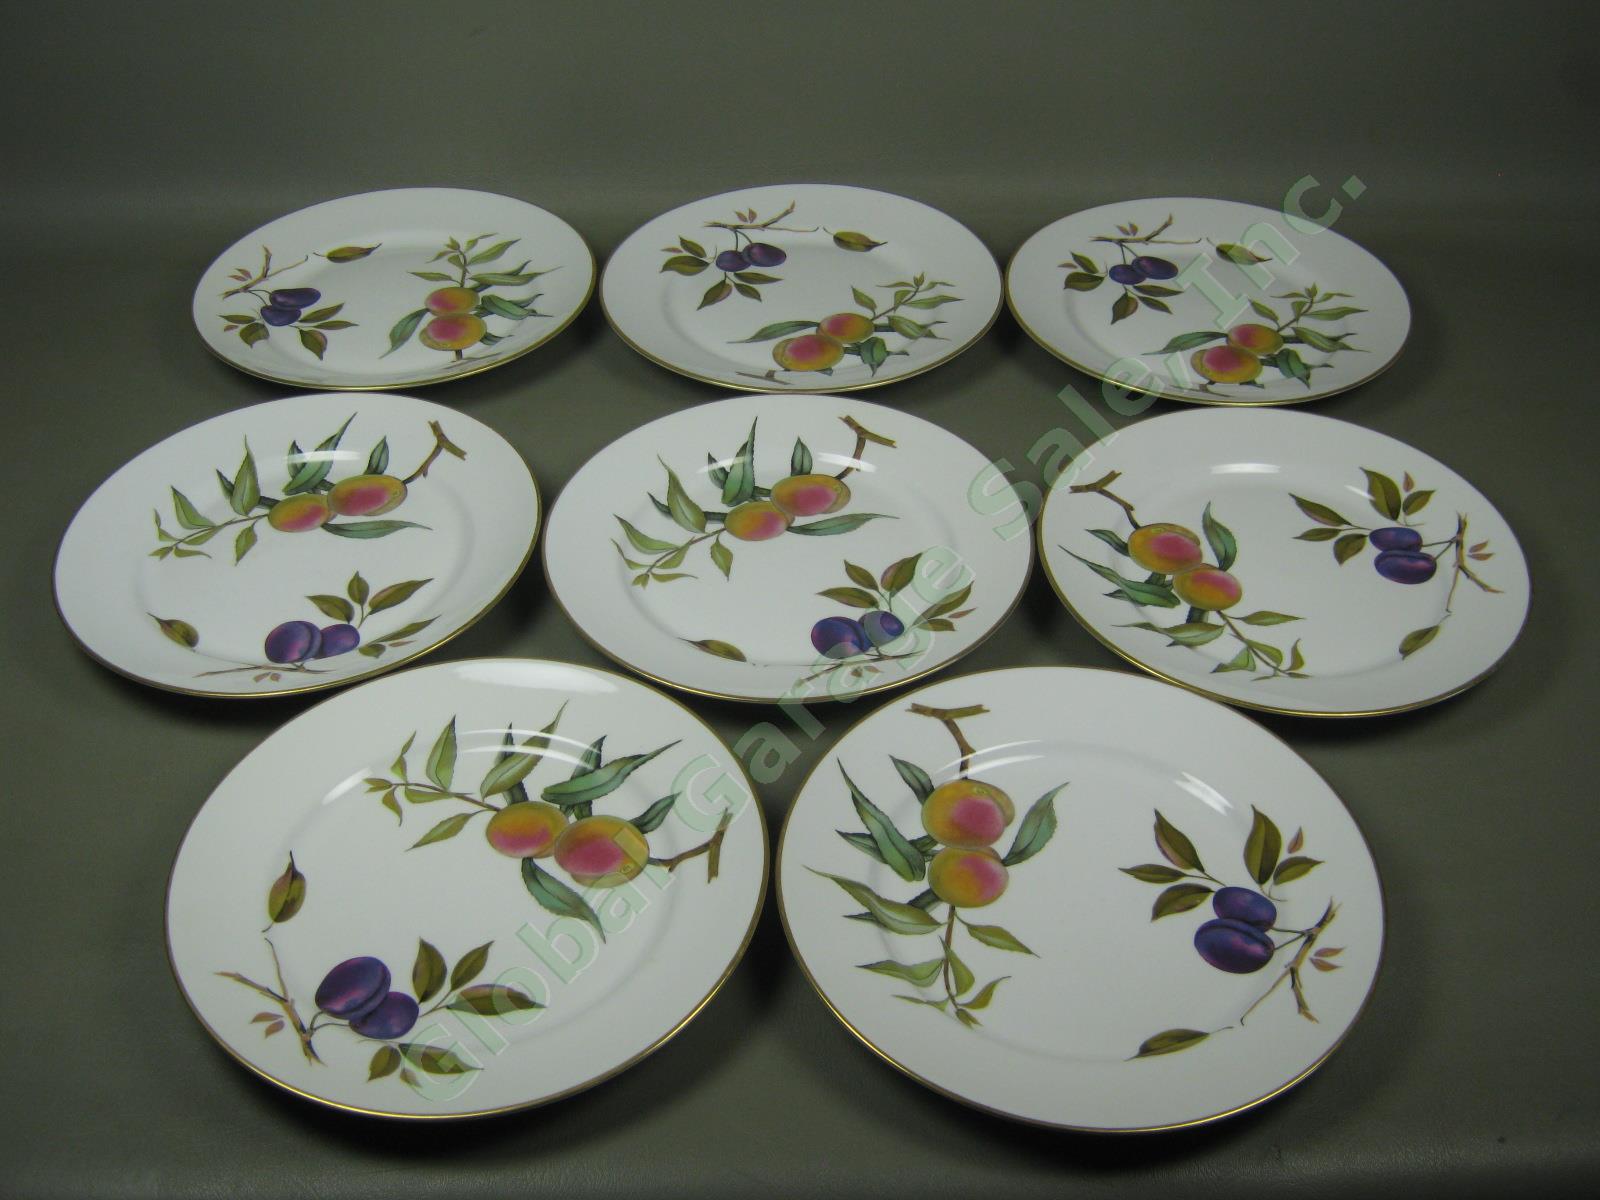 8 Vtg 1961 Royal Worcester Evesham Porcelain China 10" Dinner Plate Set Lot 1